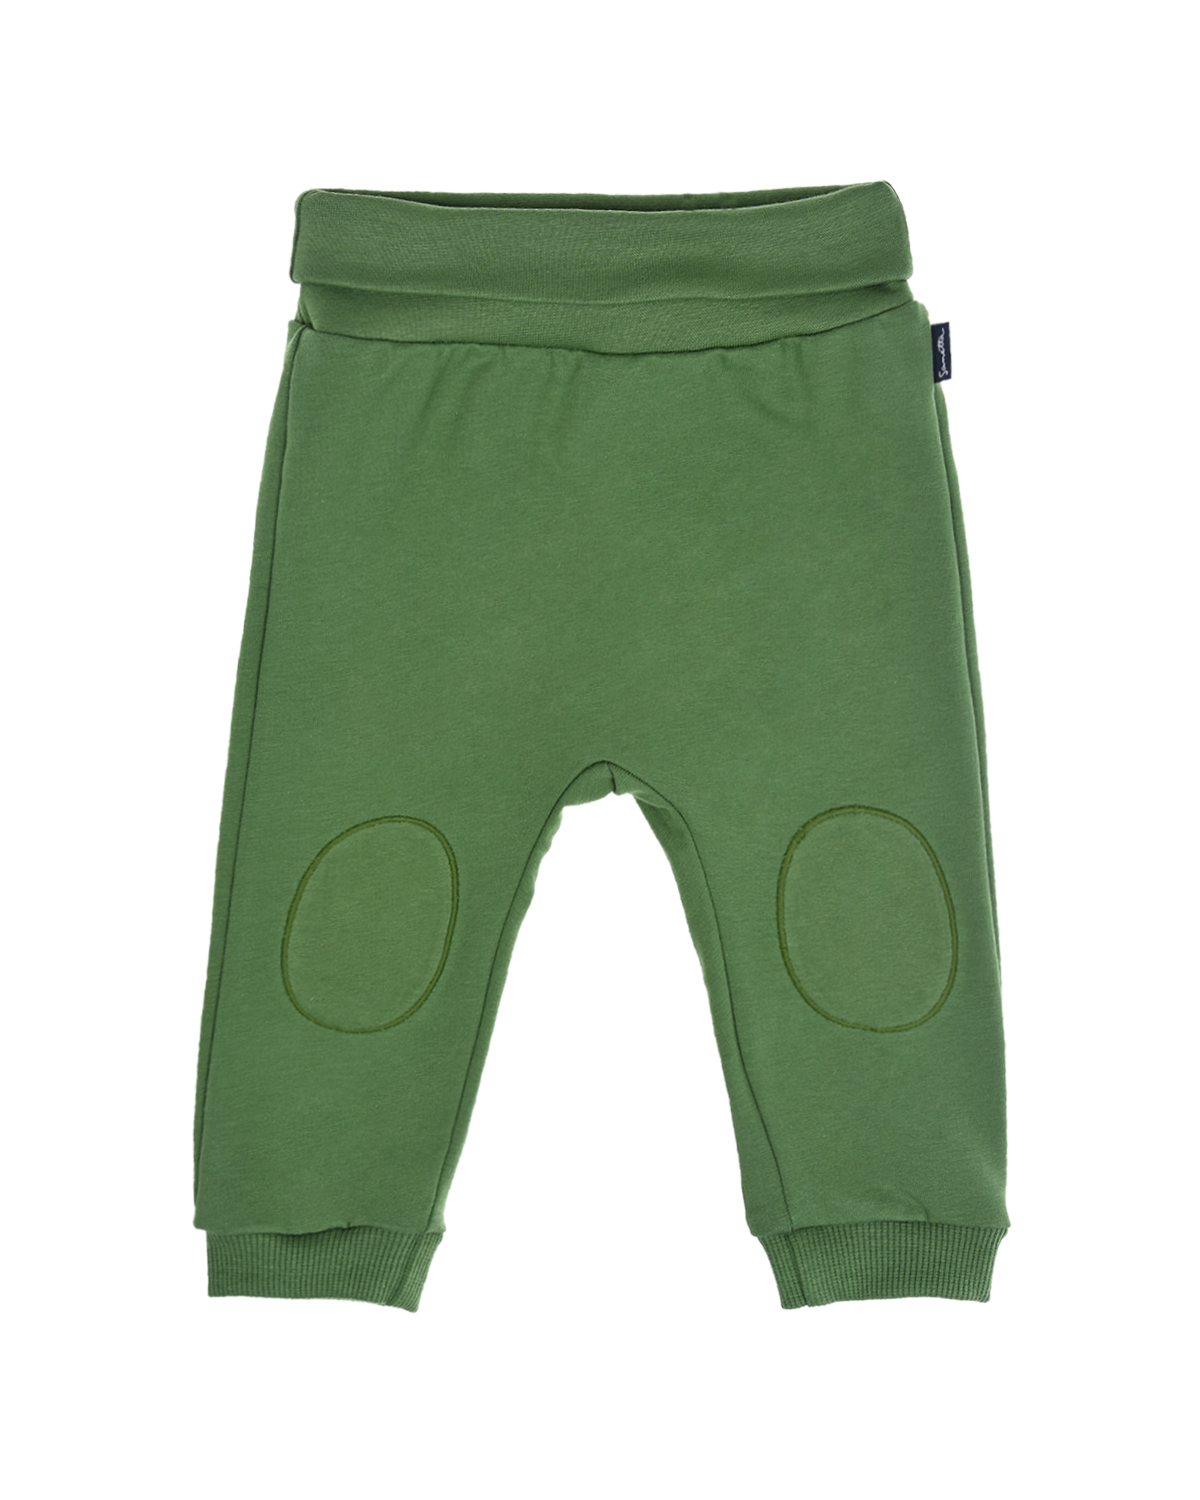 Зеленые спортивные брюки с заплатками на коленях Sanetta fiftyseven детские